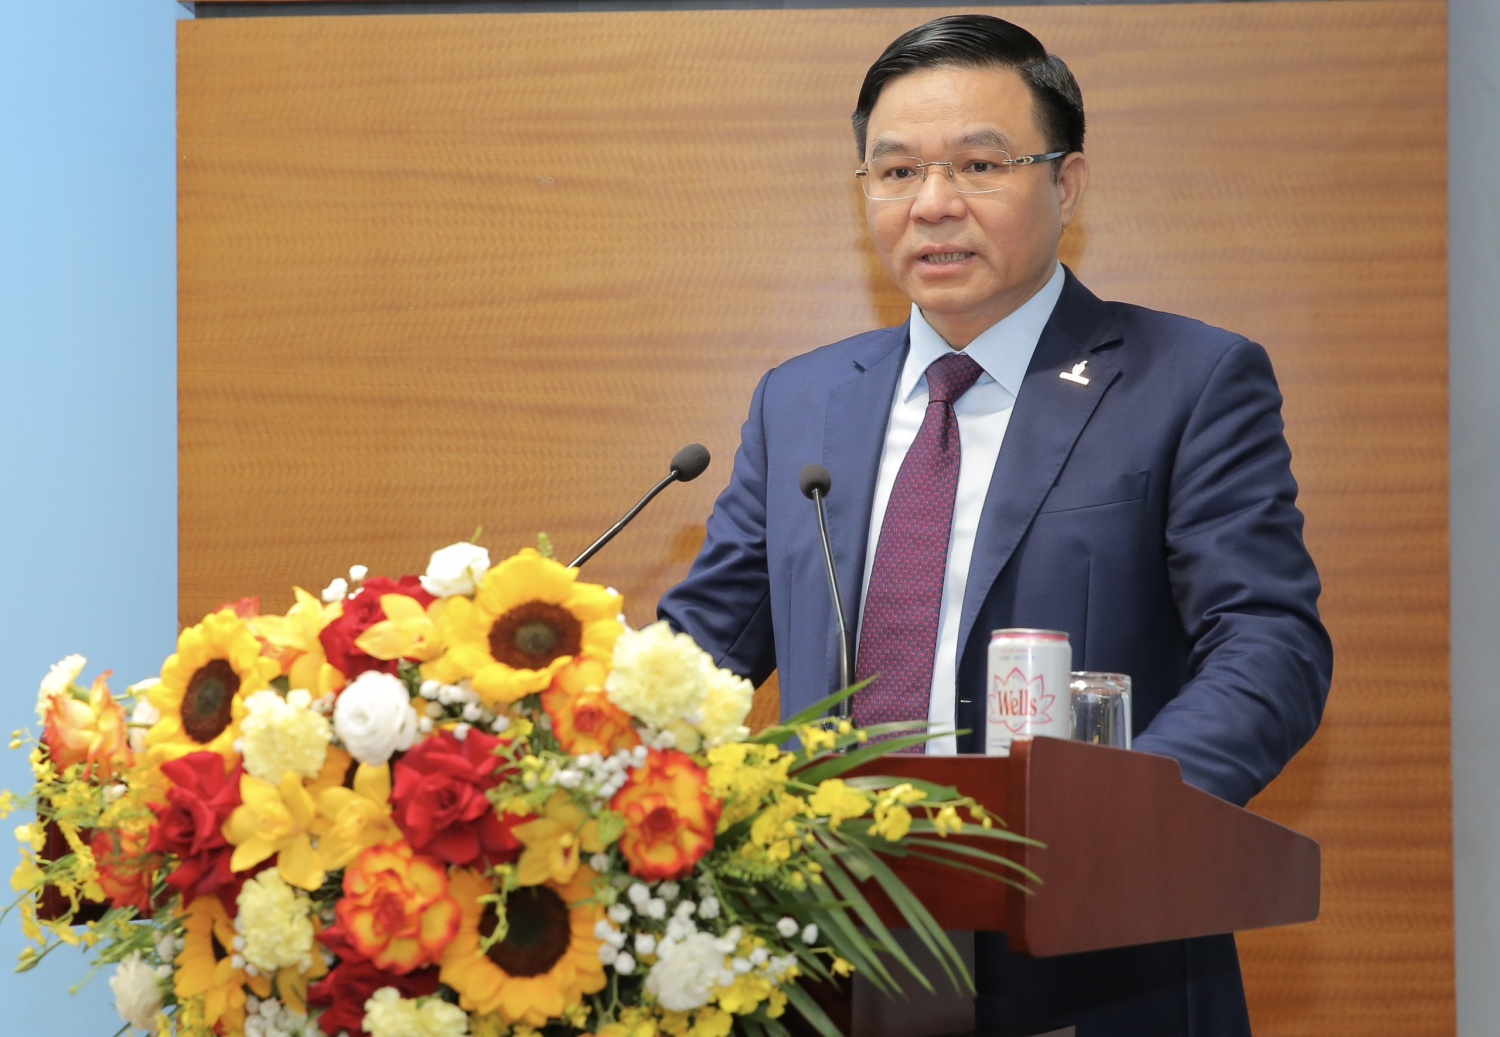 Tổng giám đốc Petrovietnam Lê Ngọc Sơn: Tiếp nối nguồn lực, kiến tạo tương lai, đưa Petrovietnam tới đỉnh cao mới